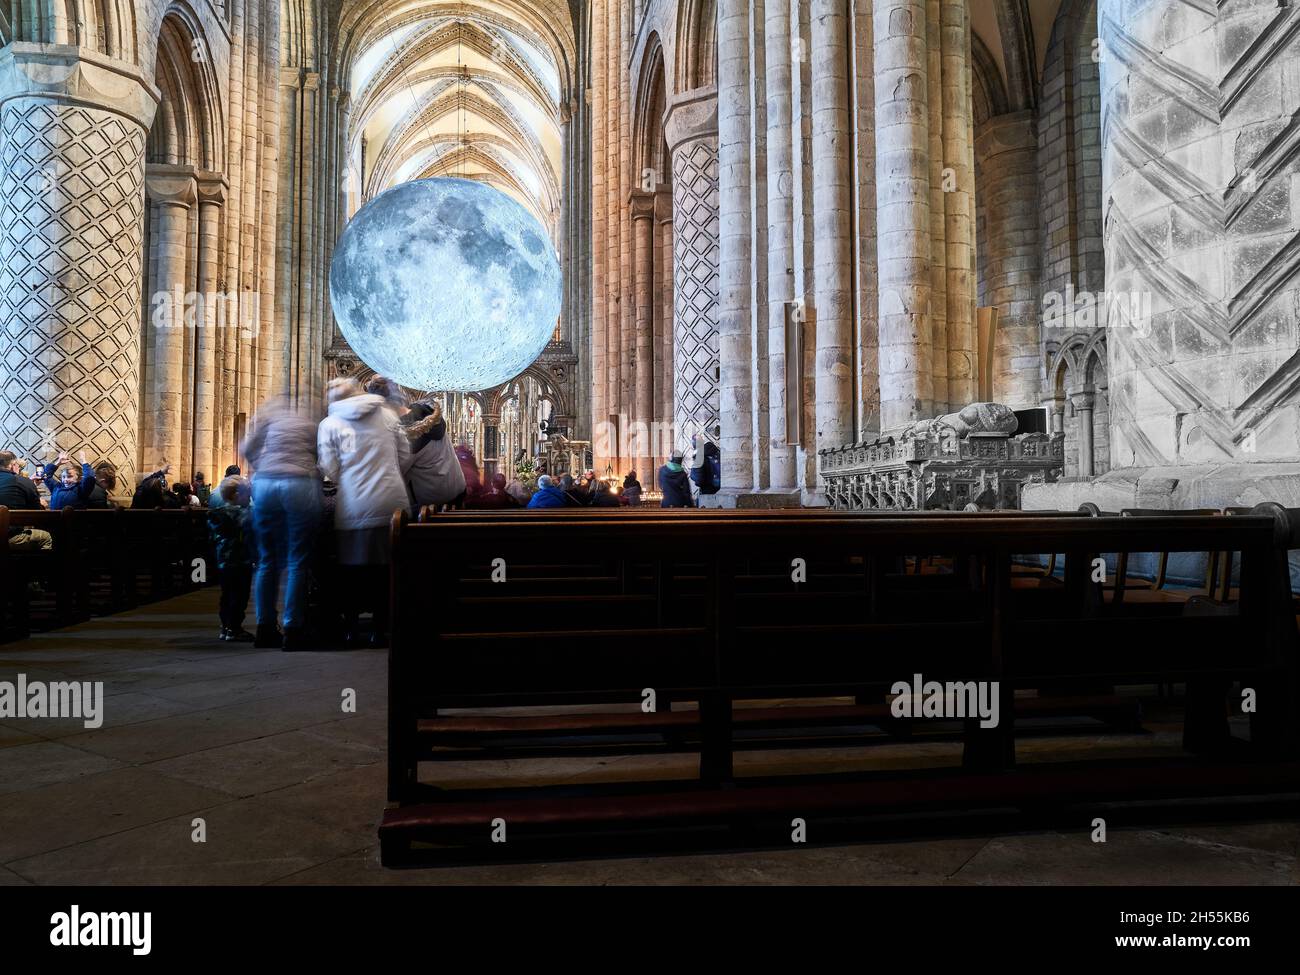 Exposition du musée de la lune de Luke Jerram dans la nef de la cathédrale de Durham, Angleterre, octobre 2021. Banque D'Images